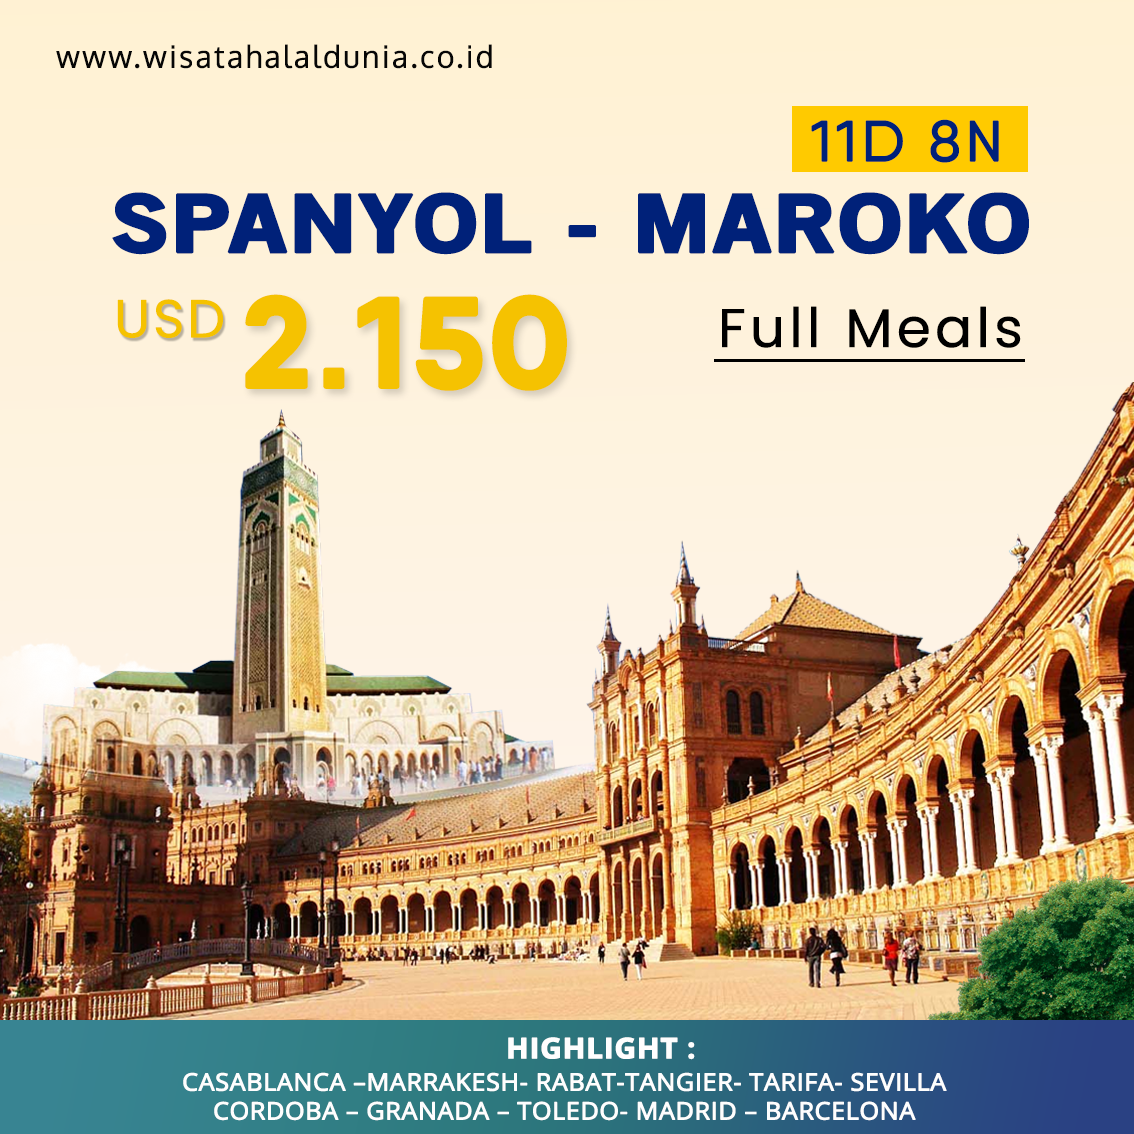 Paket Tour Spanyol Maroko Full Meals Wisata Halal Dunia